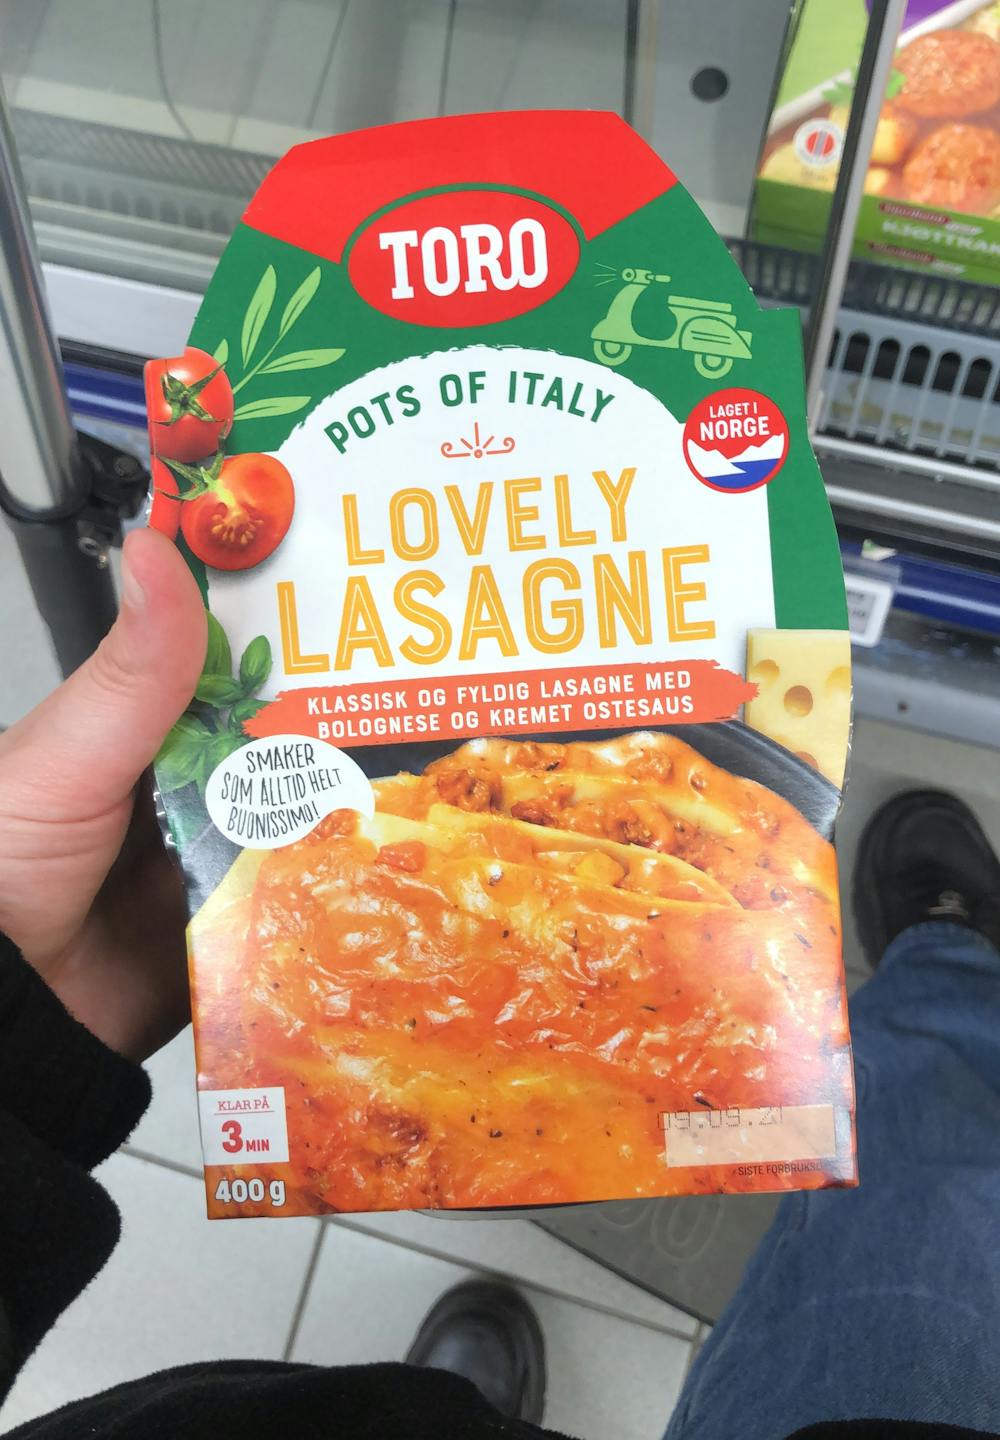 Lovely lasagne, Toro